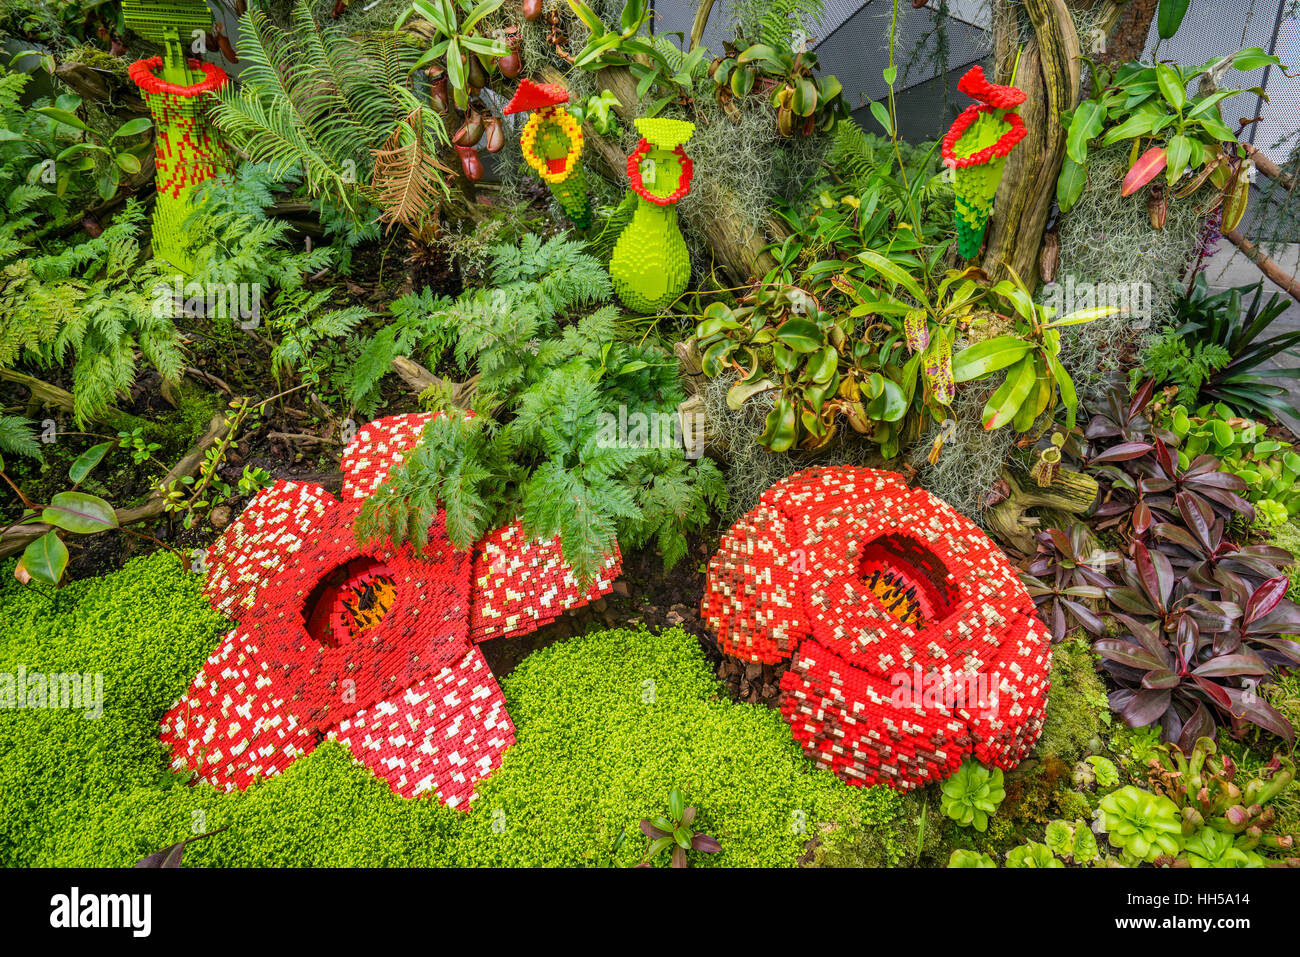 Plantas carnívoras fotografías e imágenes de alta resolución - Alamy